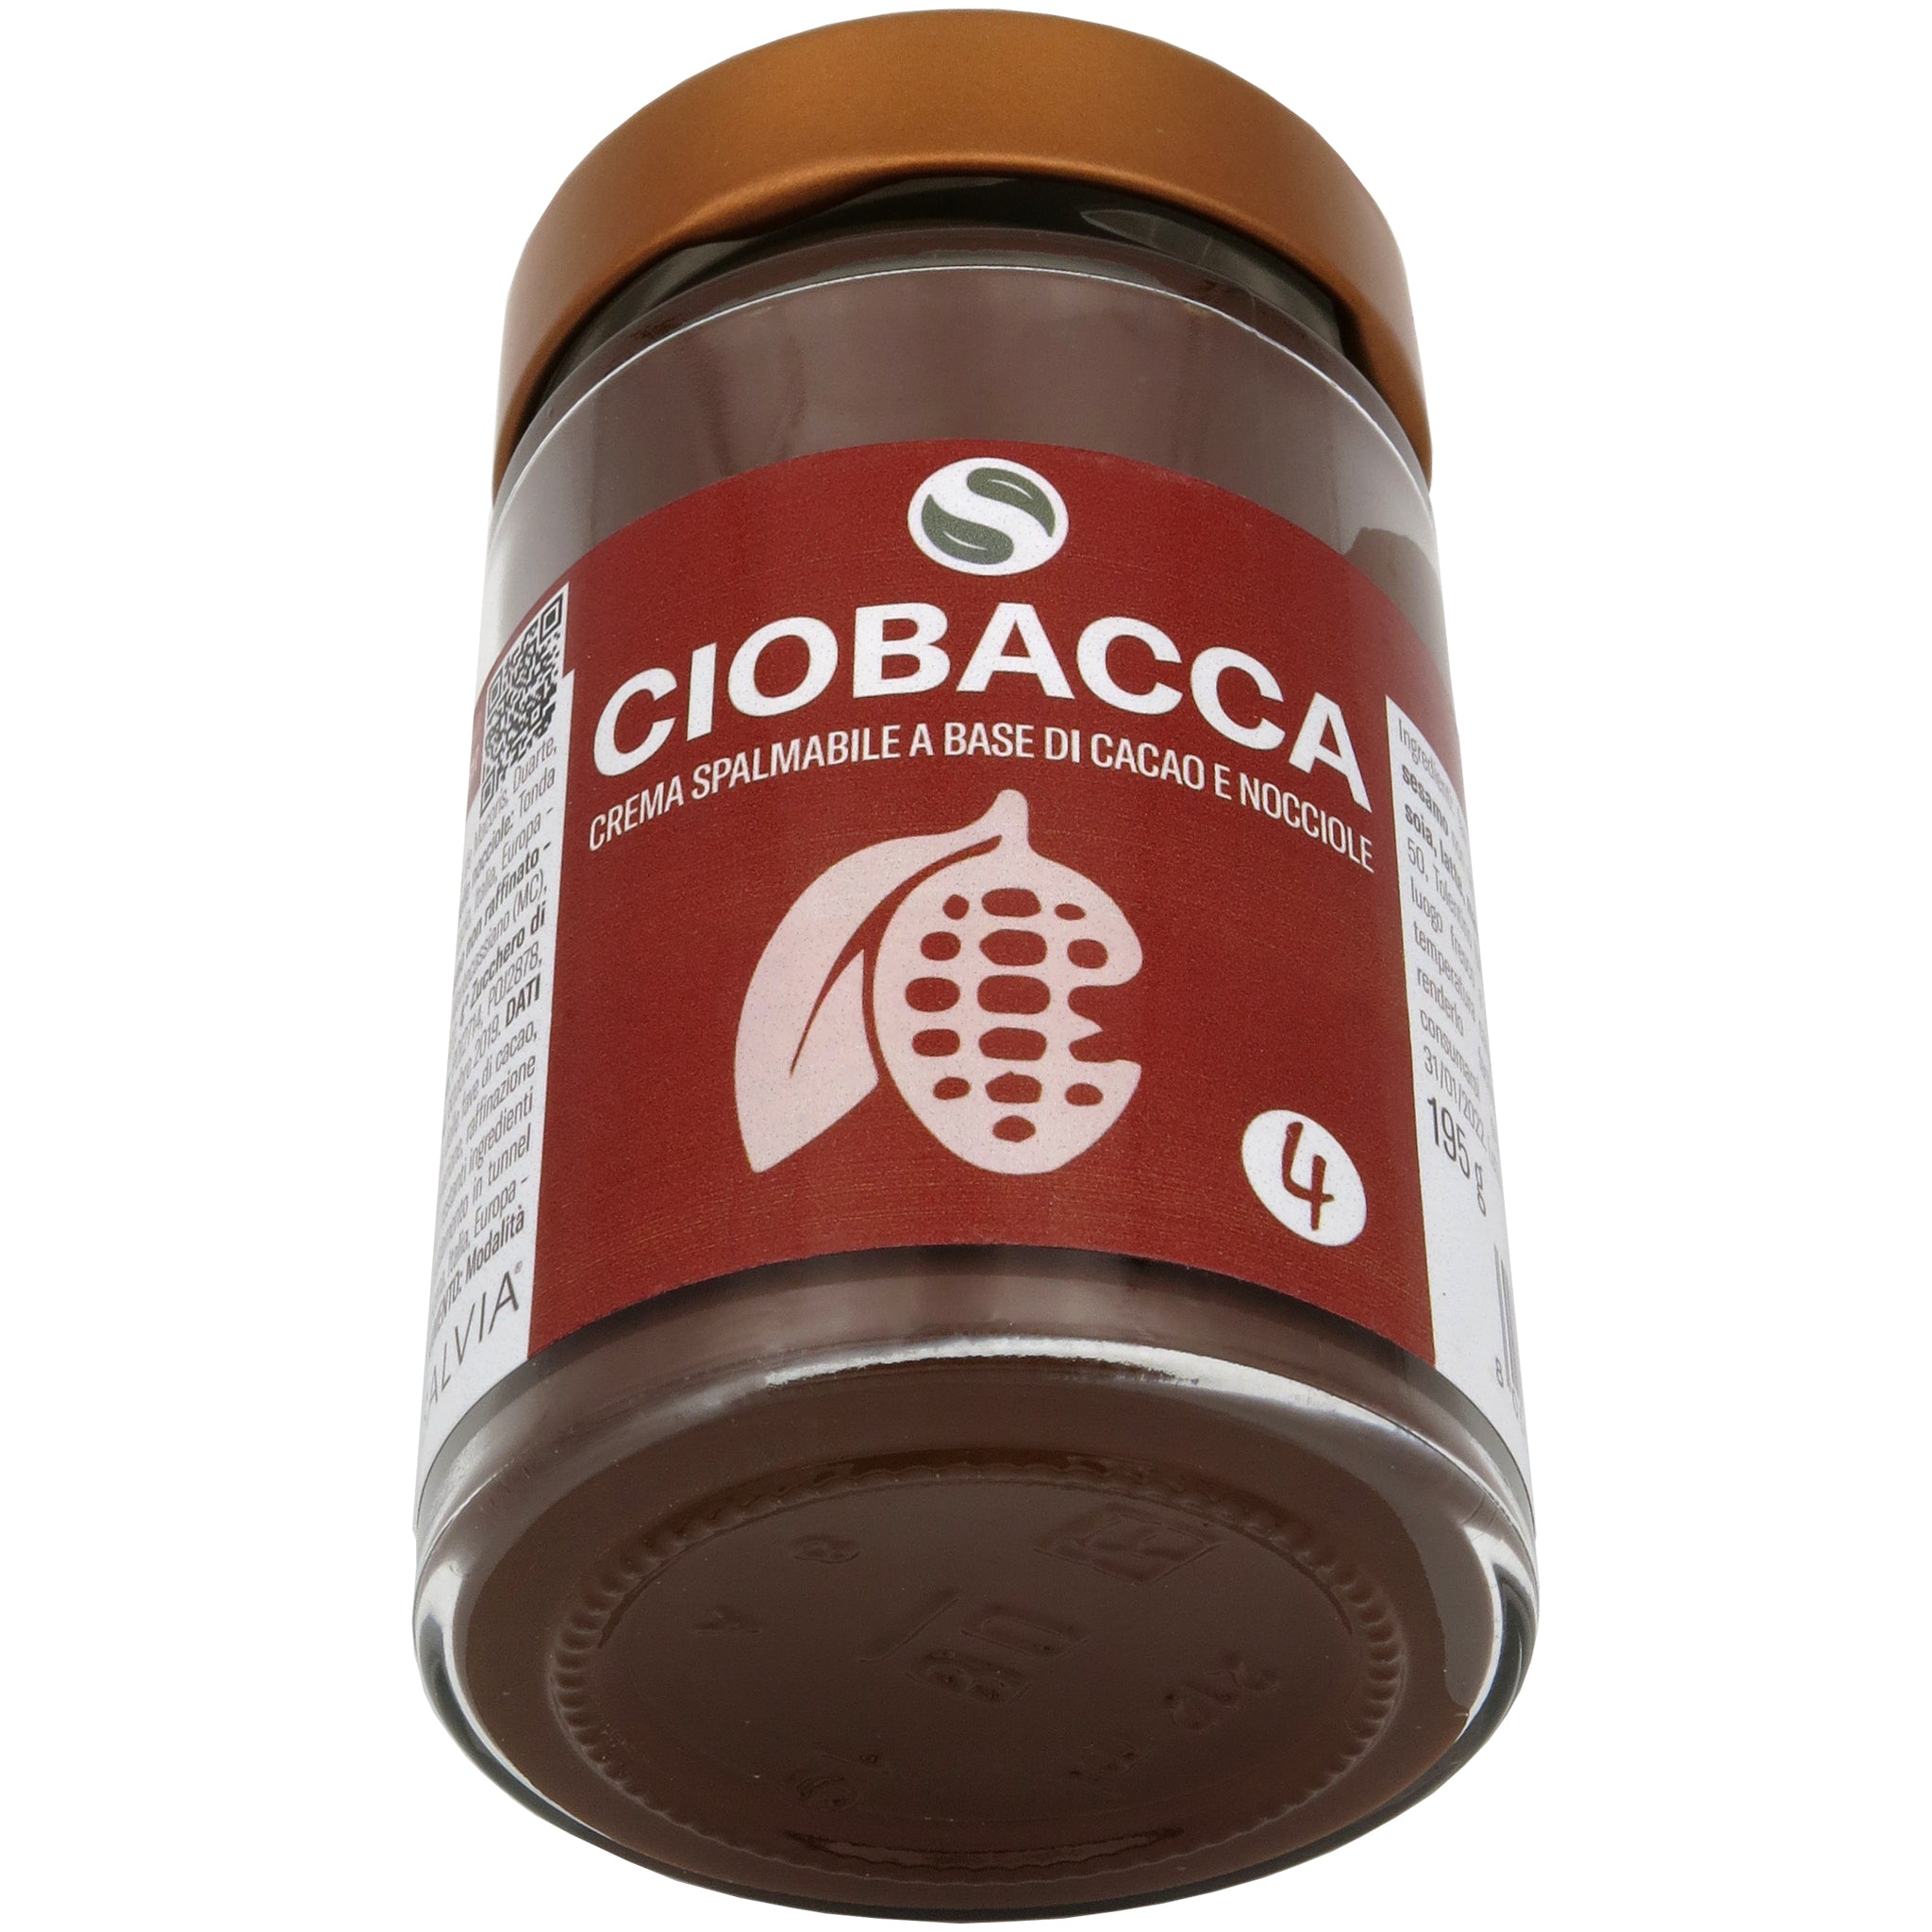 Ciobacca - Crema spalmabile a base di cacao e nocciole